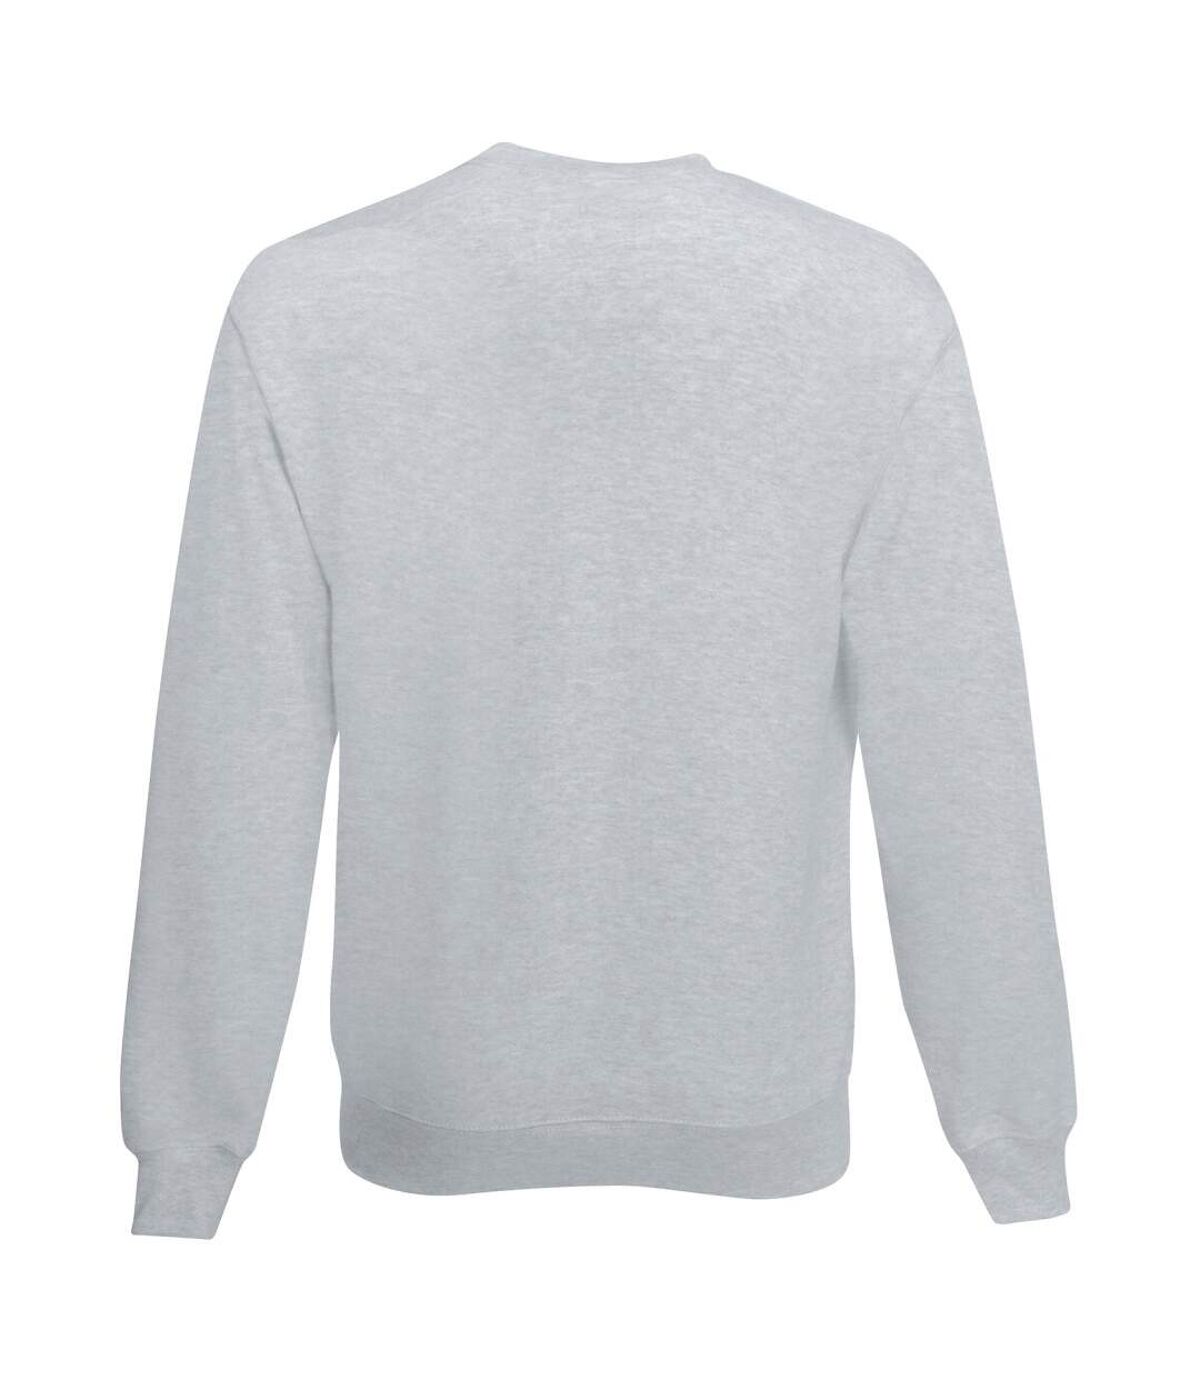 Sweat-shirt en jersey - Homme (Gris) - UTBC3903